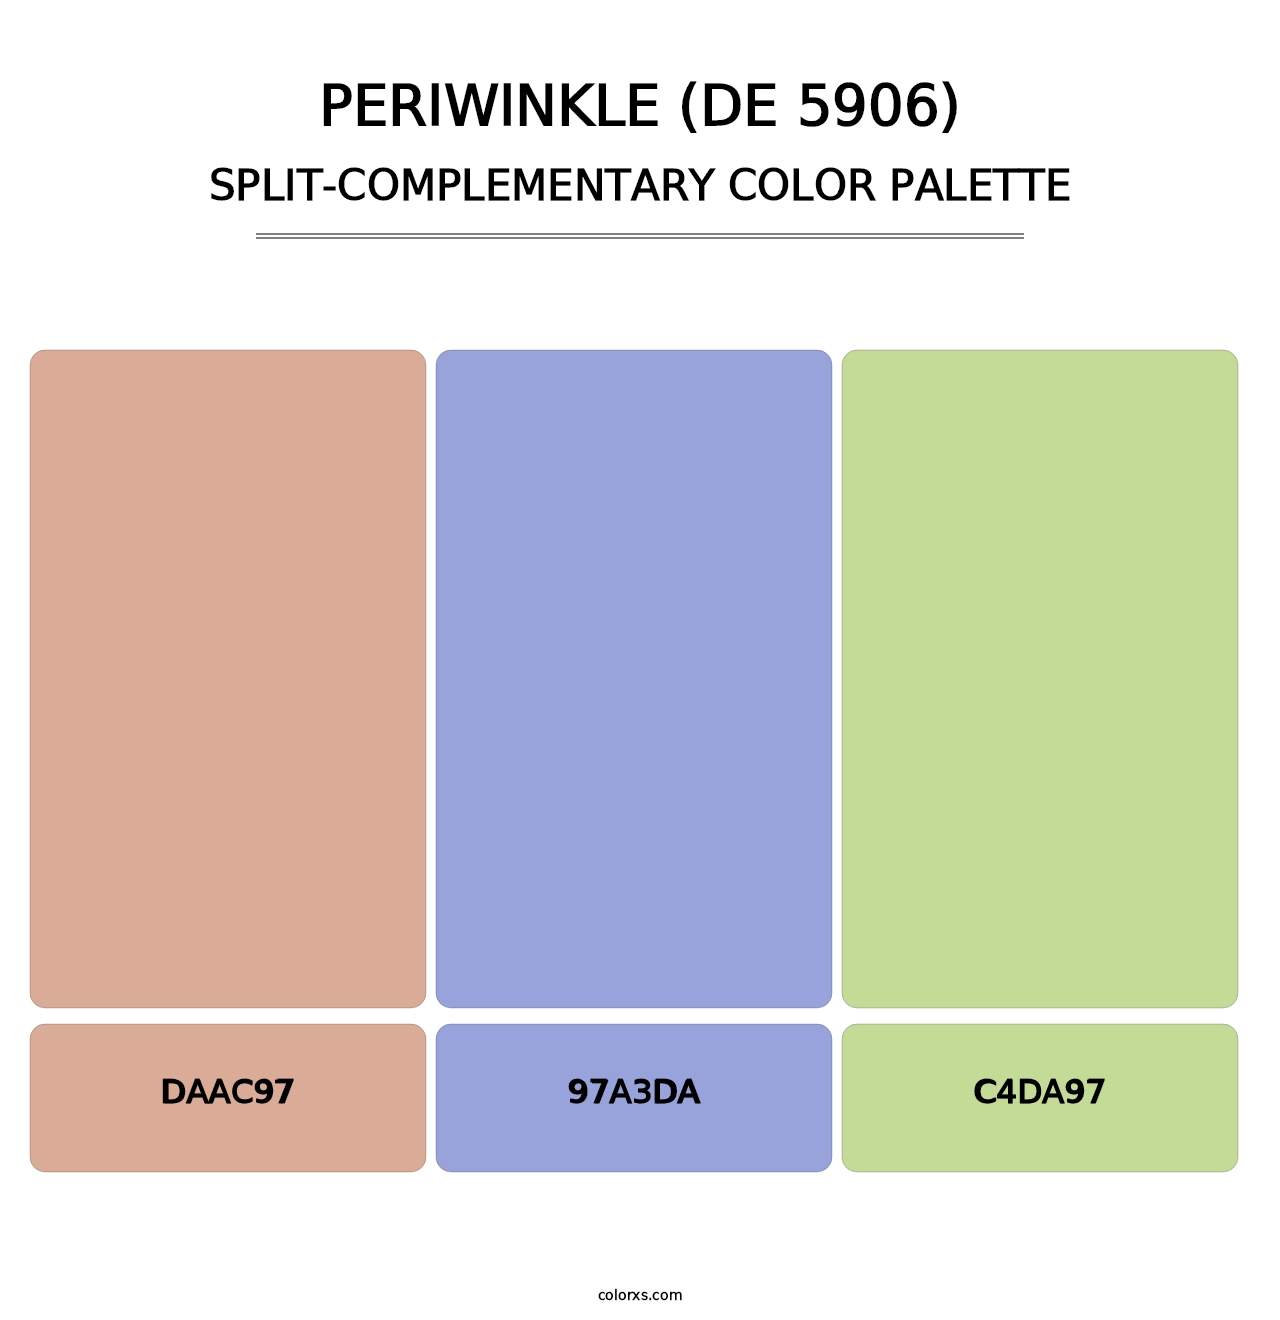 Periwinkle (DE 5906) - Split-Complementary Color Palette